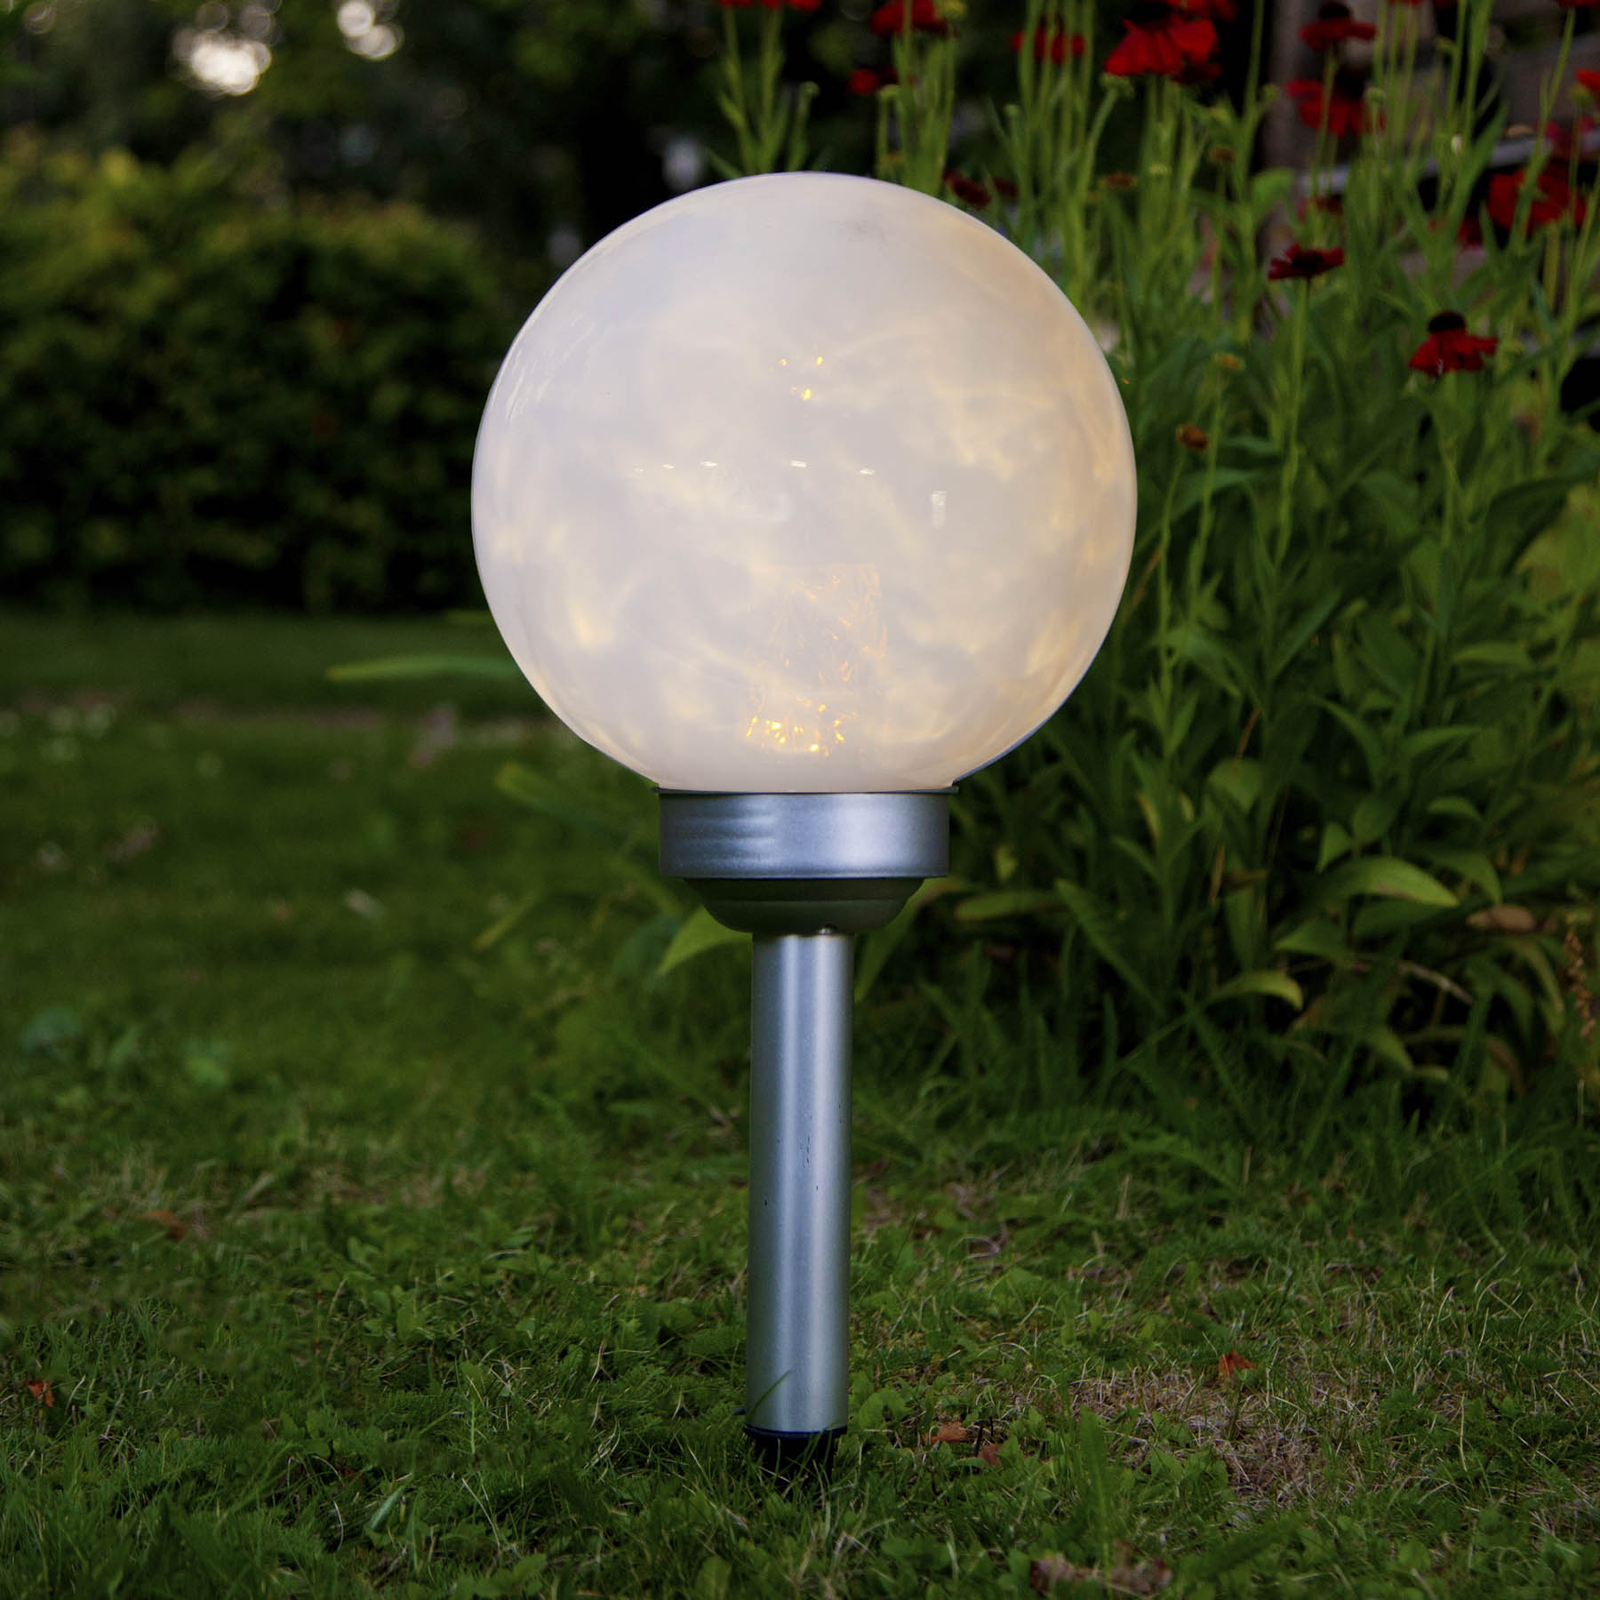 Defecte Ineenstorting erfgoed LED lamp op zonne-energie Lunay, draaiende lamp | Lampen24.be